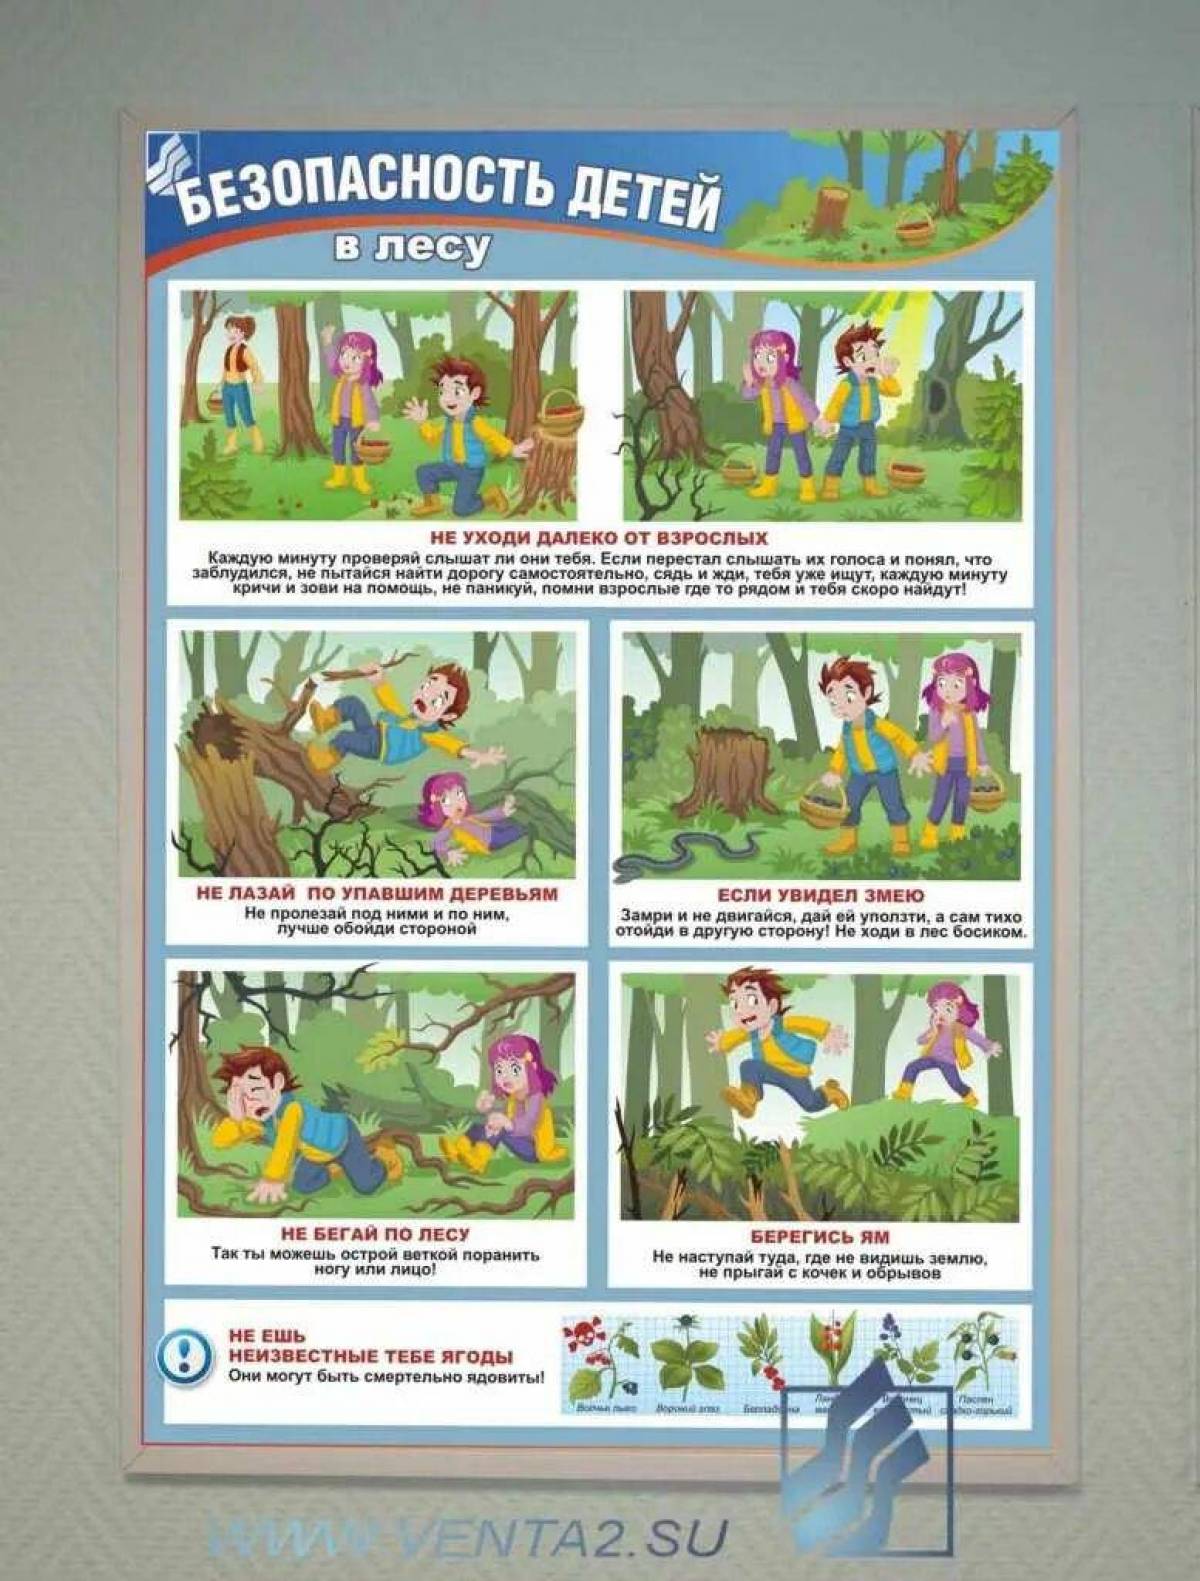 Составить памятку поведение в лесу. Безопасность в лесу для детей. Привали поведения в лесу. Безопасность в лесу для дошкольников. Правило безопасного поведения в лесу.